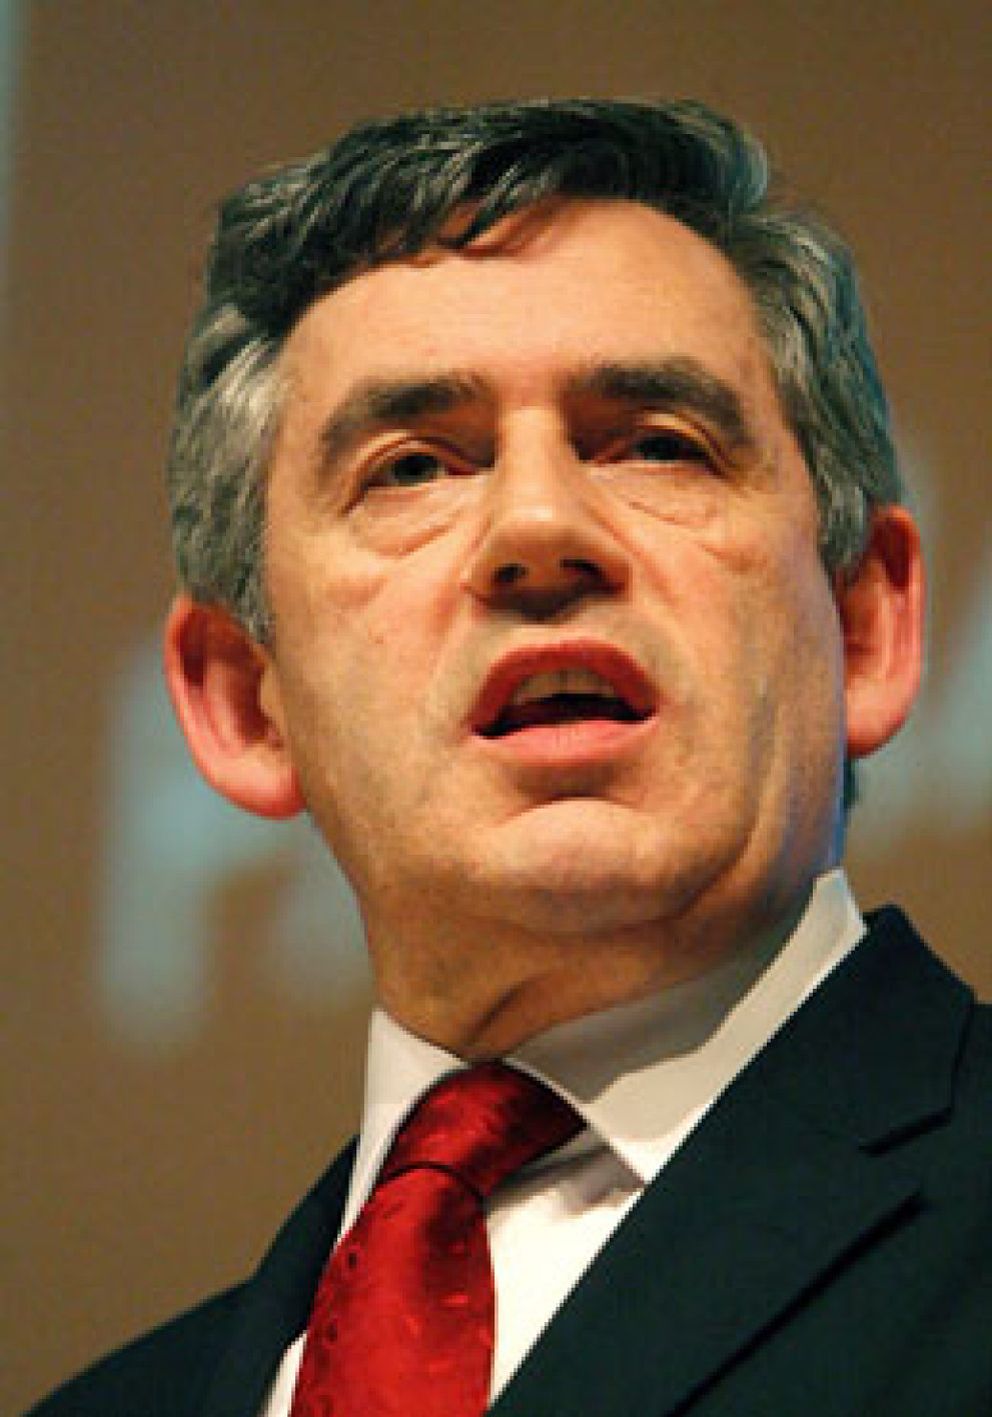 Foto: Las encuestas dan la espalda a Brown, inmerso en su campaña para suceder a Blair